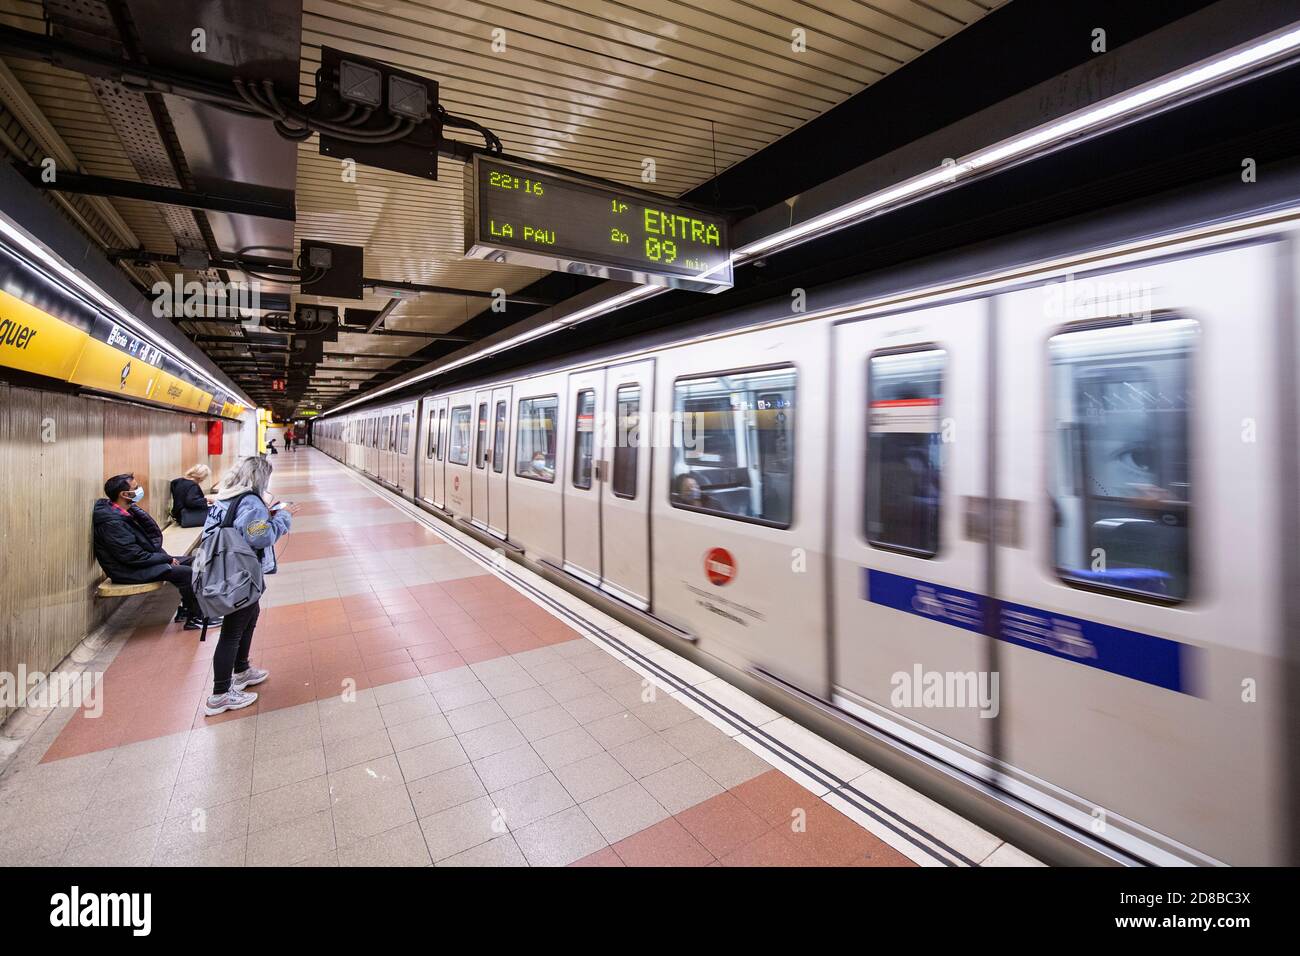 2020.10.28. Barcelone, Espagne. 22:15 h. Quelques personnes attendent pour prendre le métro pendant les premières heures du couvre-feu de la journée. © Aitor Rodero. Banque D'Images